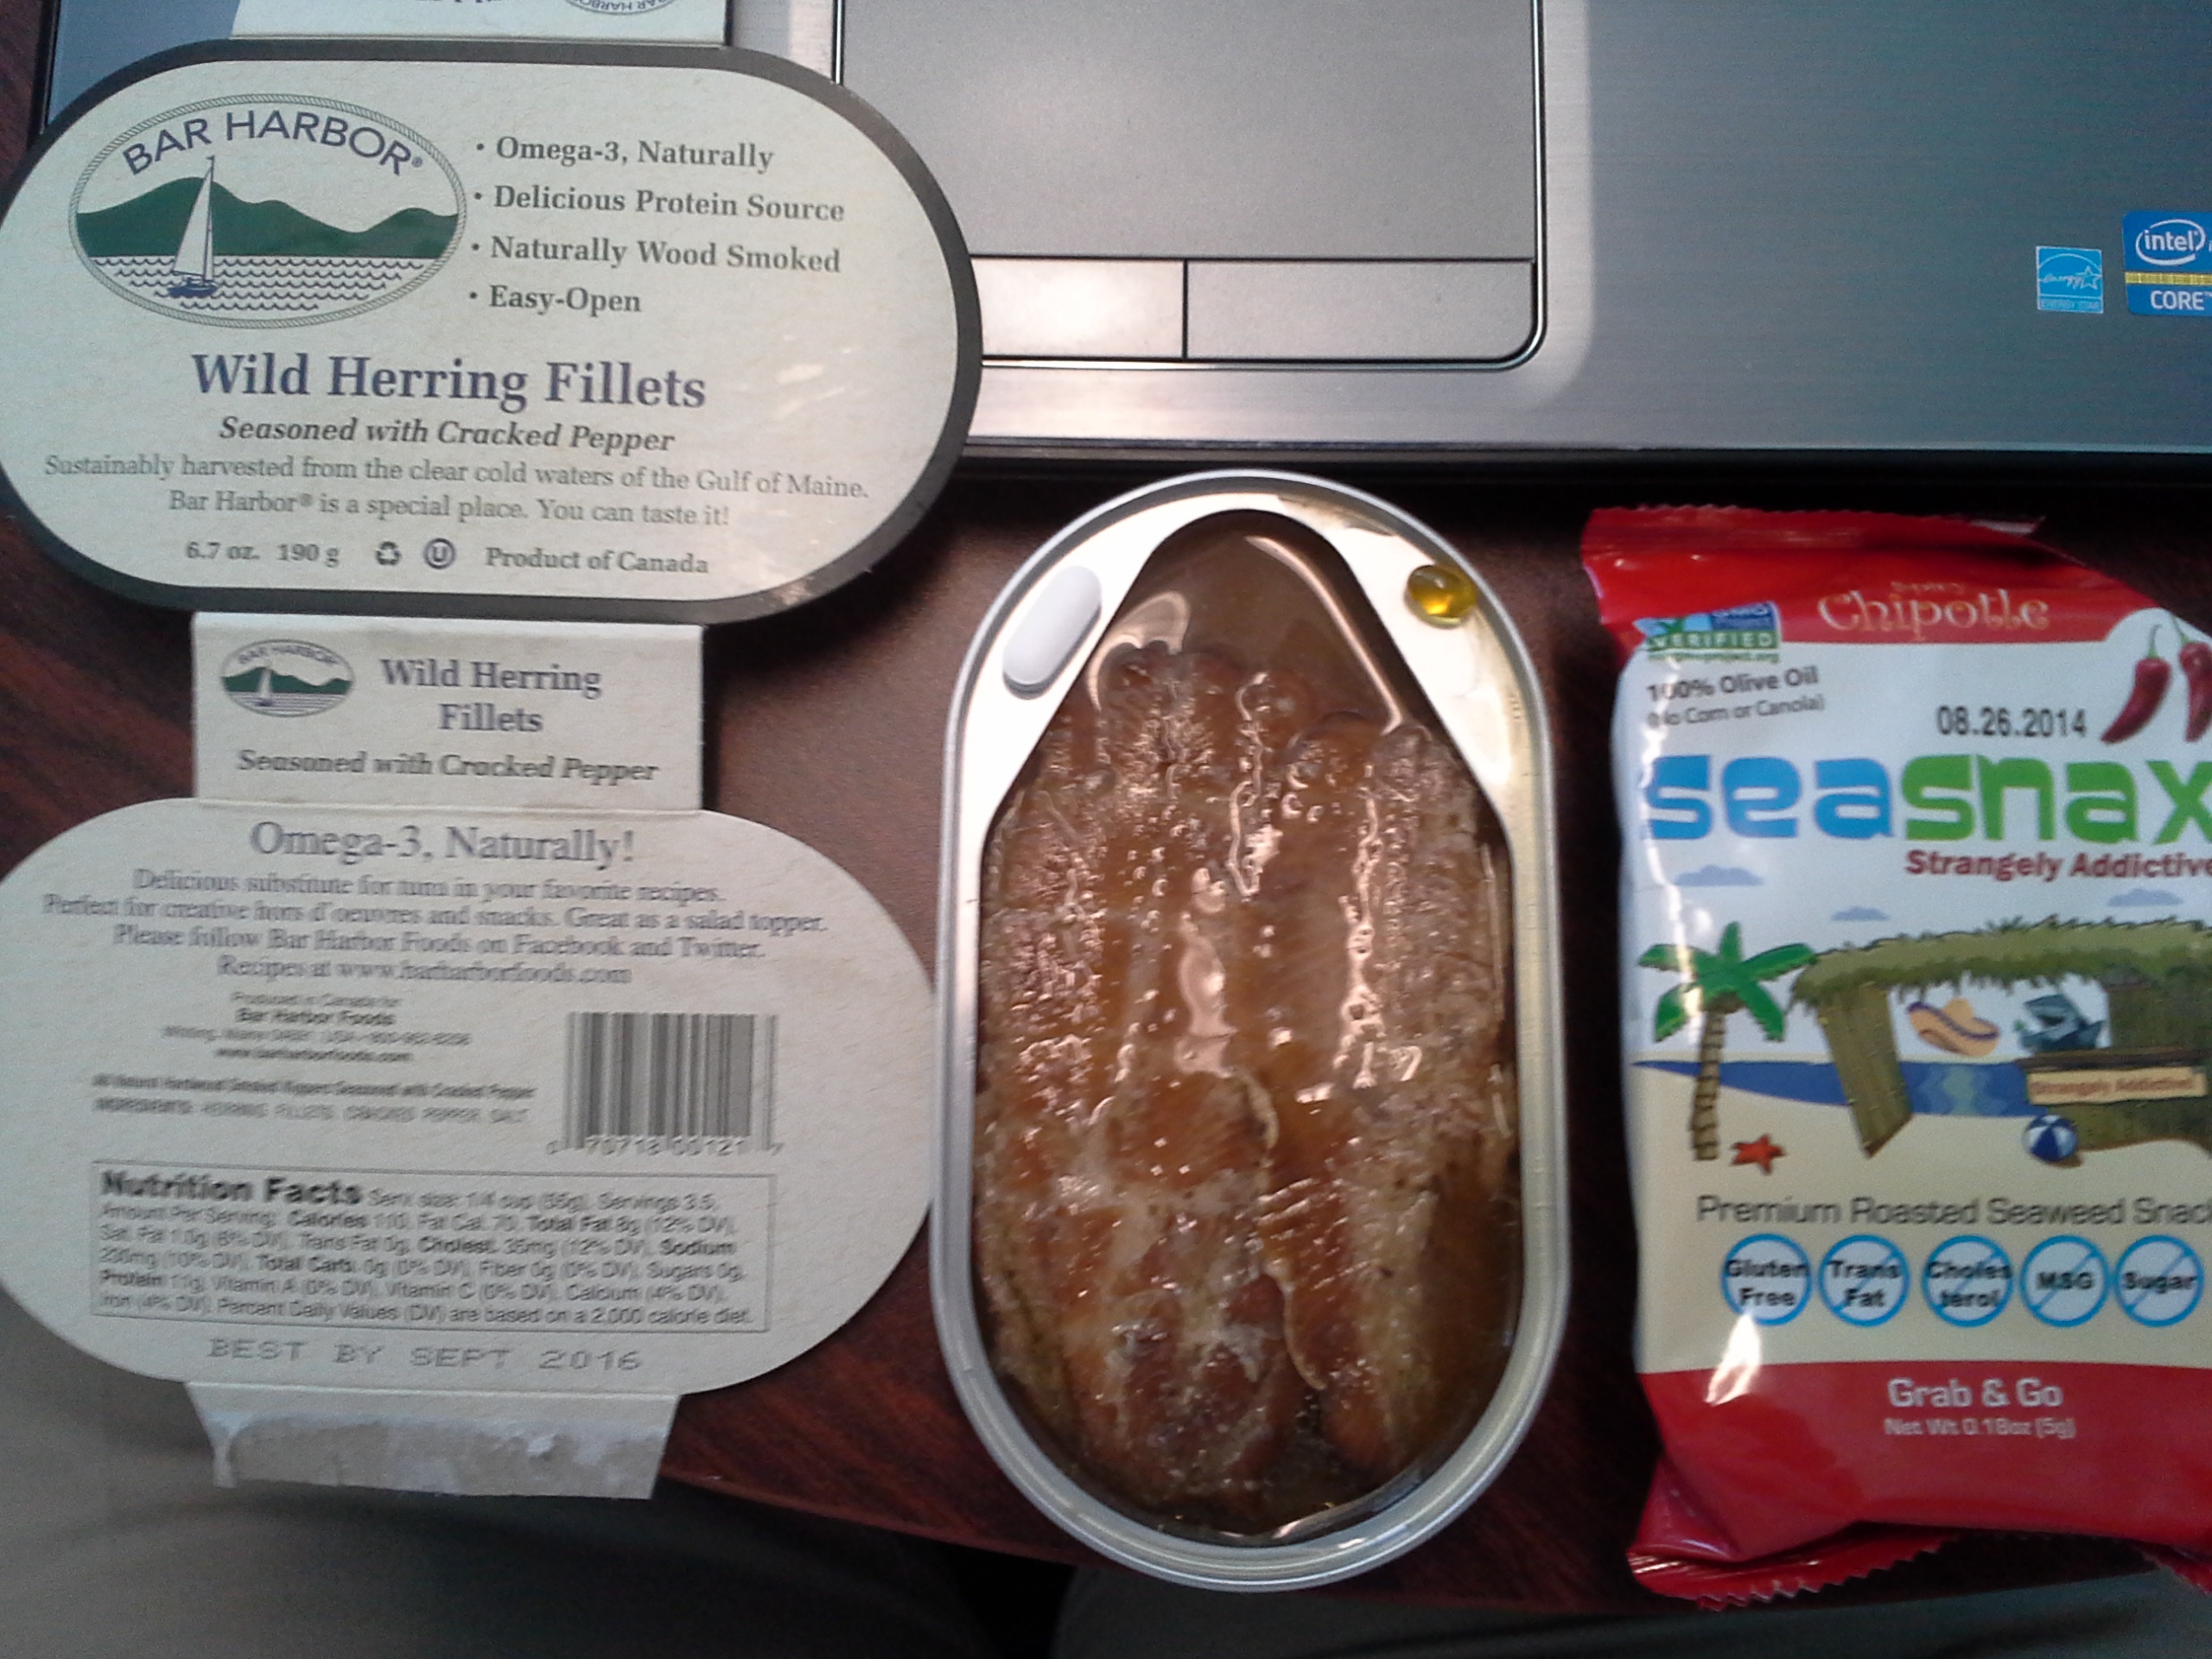 Lunch: 2:45 p.m. | 6.7 oz. herring, .18 oz. chipotle SeaSnax seaweed, 5,000 IU Vitamin D capsule, Calcium/Magnesium/Zinc caplet